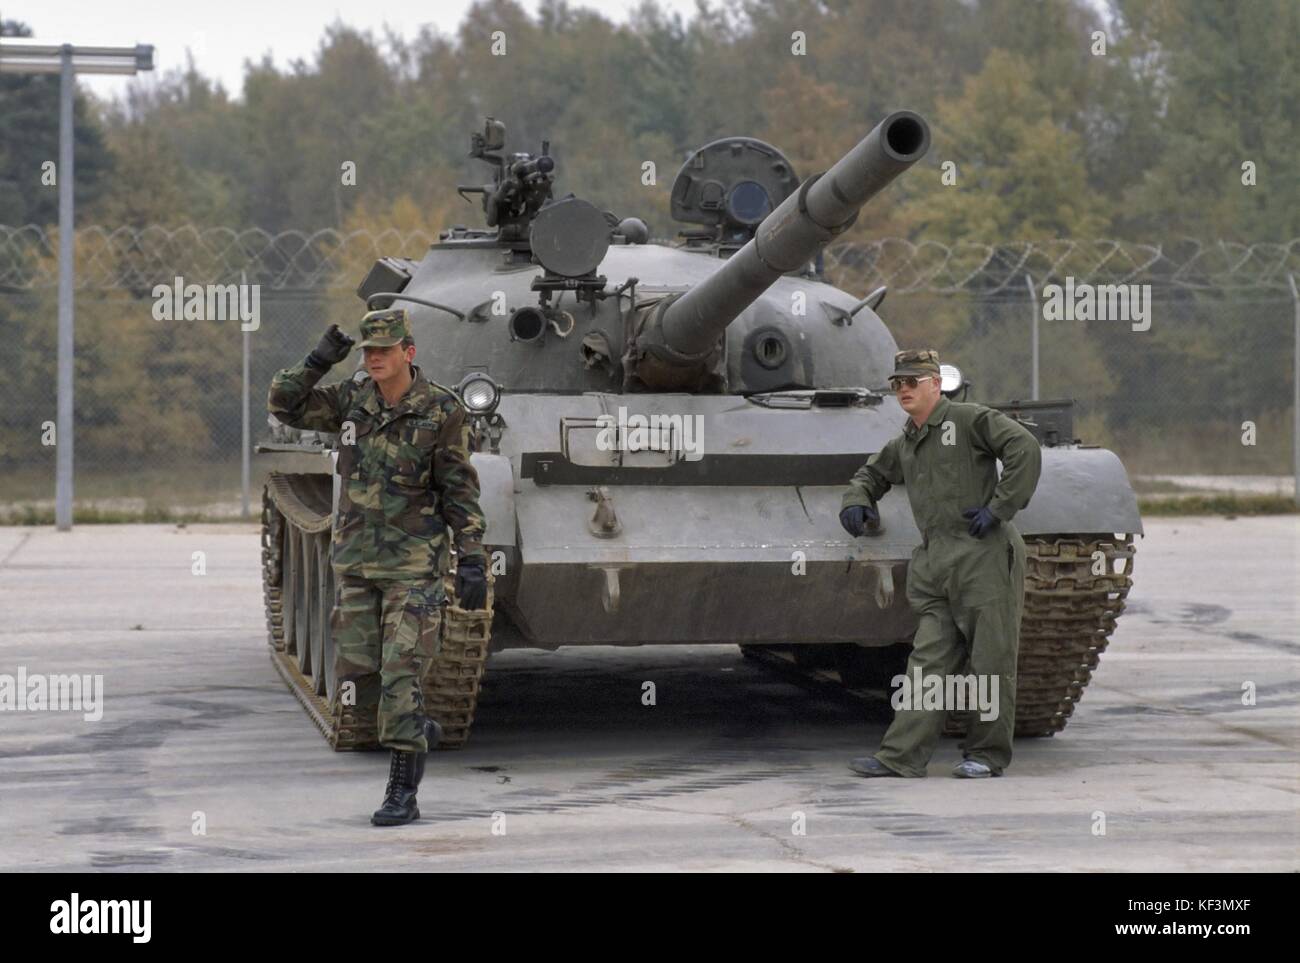 OTAN en Allemagne; Armée des États-Unis, détachement d'entraînement des matériaux étrangers (DMT) à la zone d'entraînement de Grafenwoehr; installation pour l'entraînement et la familiarisation avec les équipements militaires des adversaires du Pacte soviétique et de Varsovie; char soviétique T 55 (octobre 1985) Banque D'Images